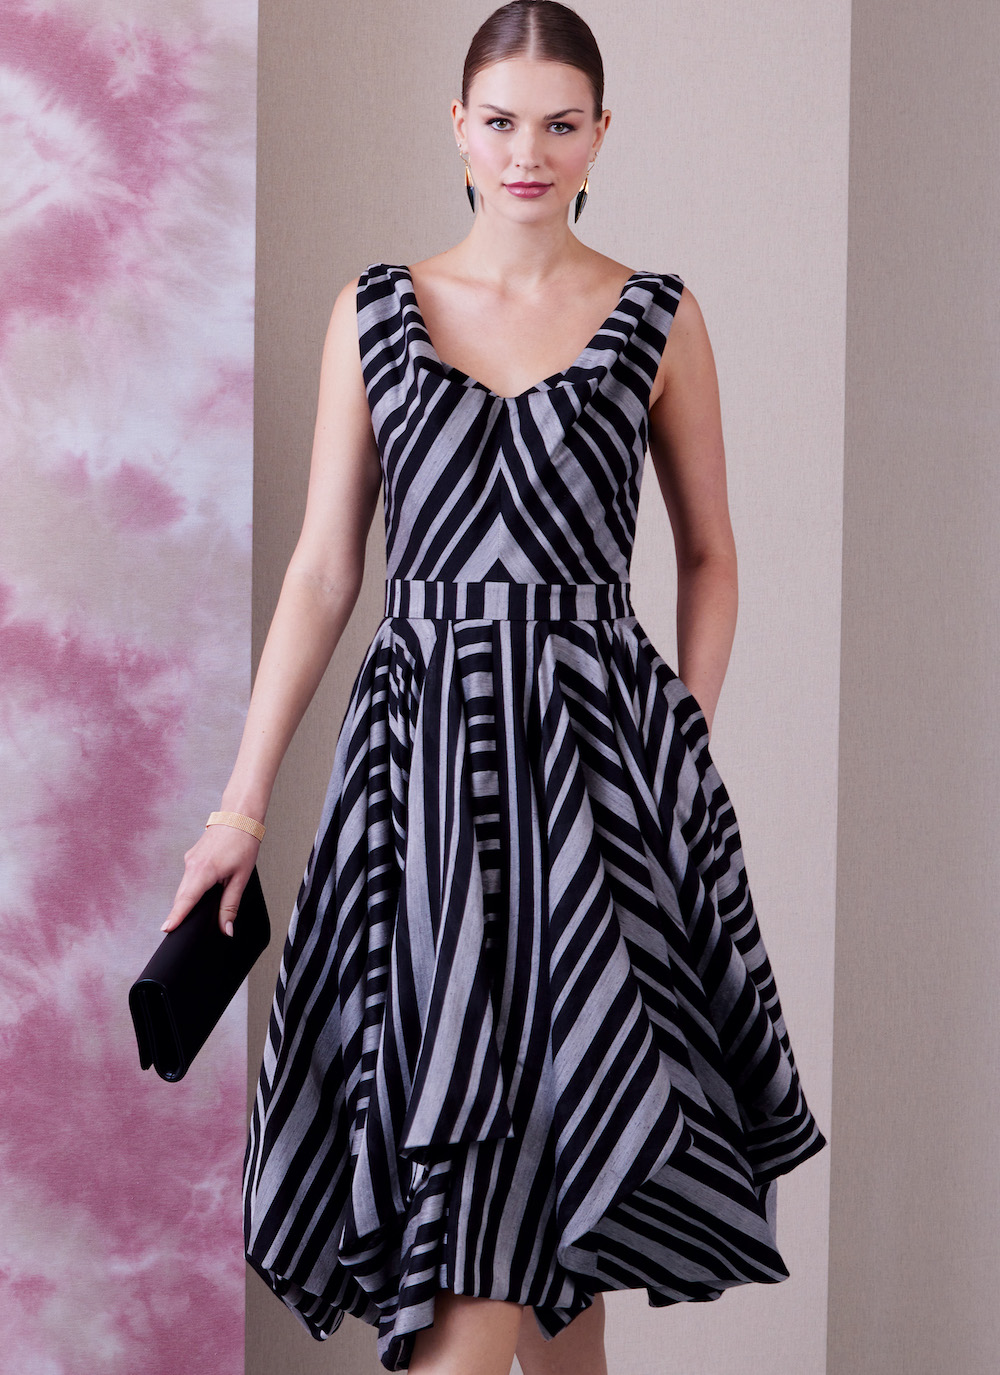 Vogue® Patterns Papierschnittmuster Kleid V1935